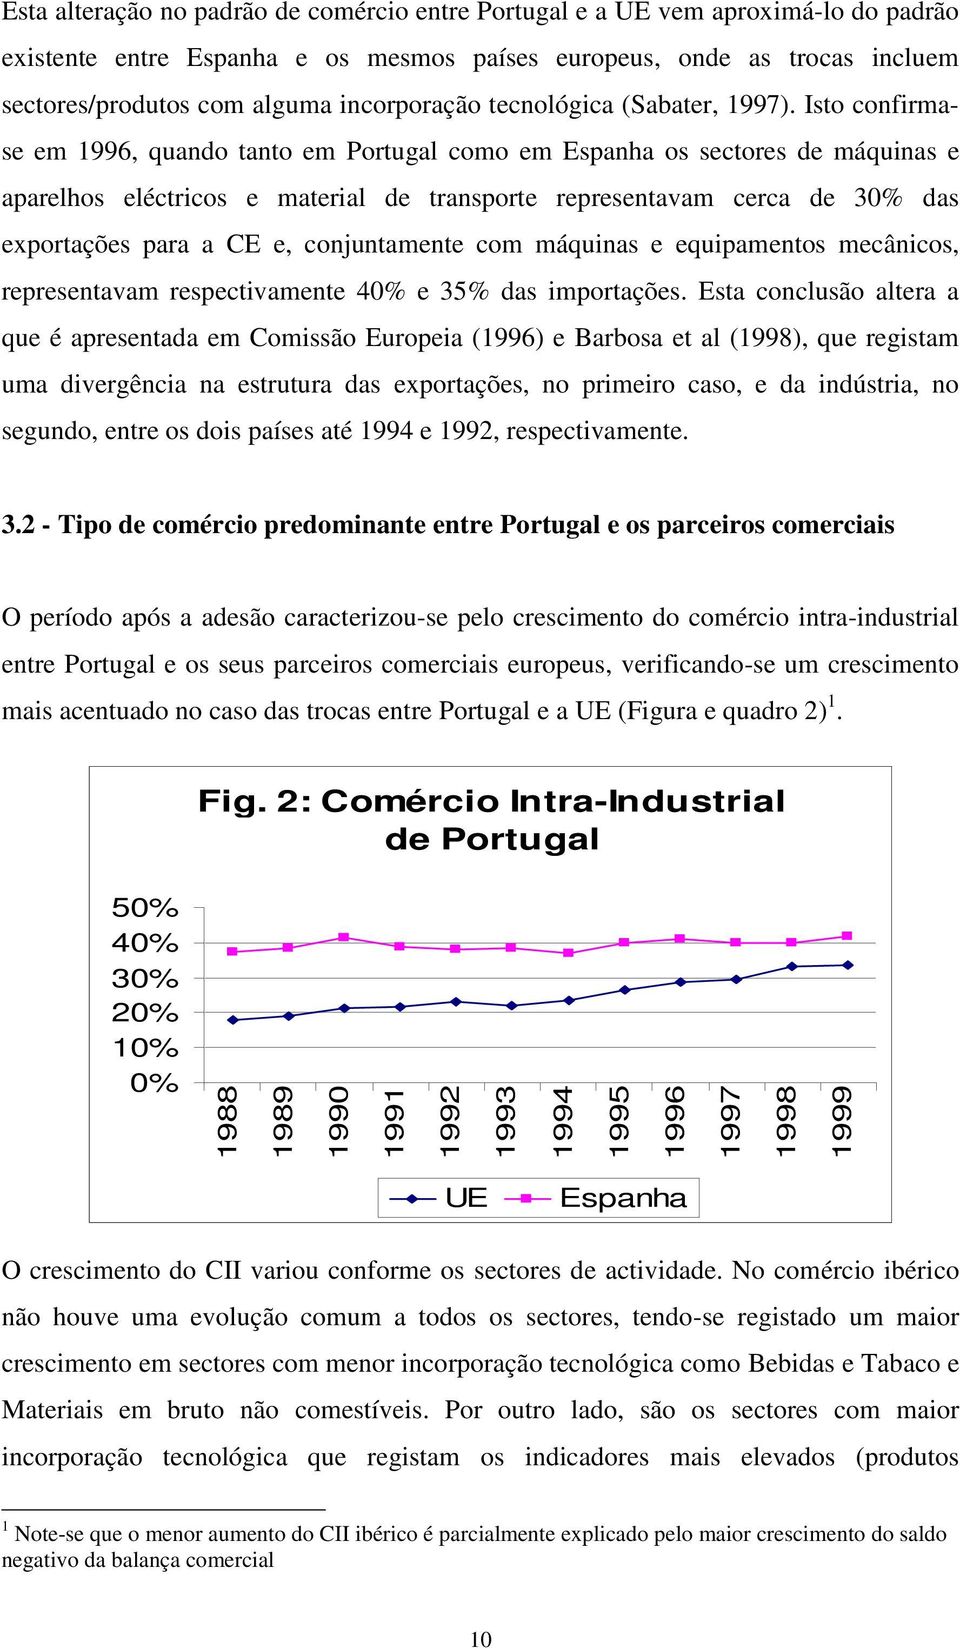 Isto confirmase em 1996, quando tanto em Portugal como em Espanha os sectores de máquinas e aparelhos eléctricos e material de transporte representavam cerca de 30% das exportações para a CE e,